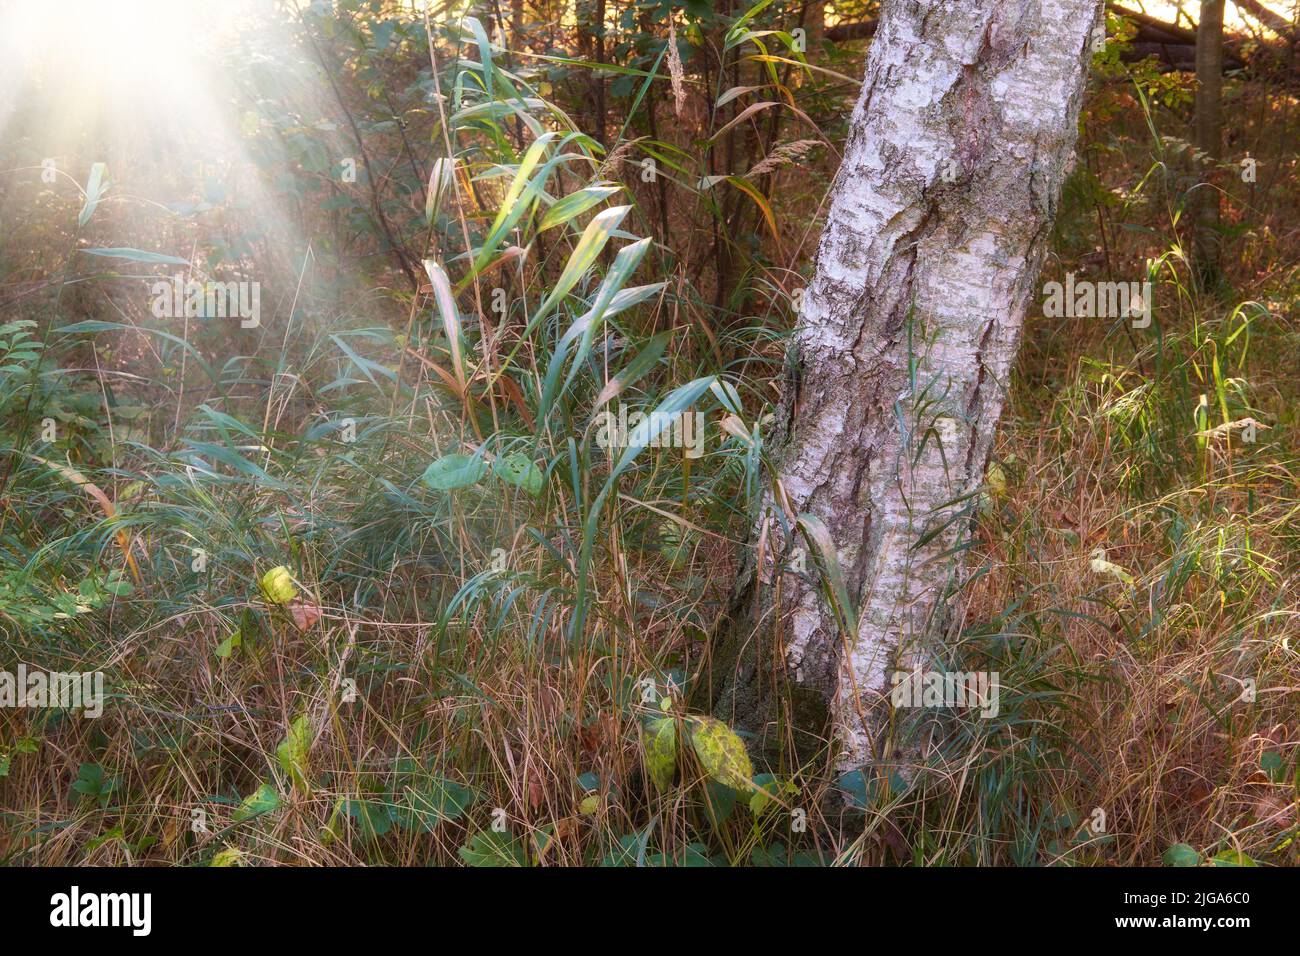 Malerische Aussicht auf einen Eukalyptus-Kaugummibaum und Unkraut, das in ruhigen Wäldern im Sonnenlicht in Norwegen wächst. Grüner immergrüner Wald in abgelegener wilder Landschaft Stockfoto